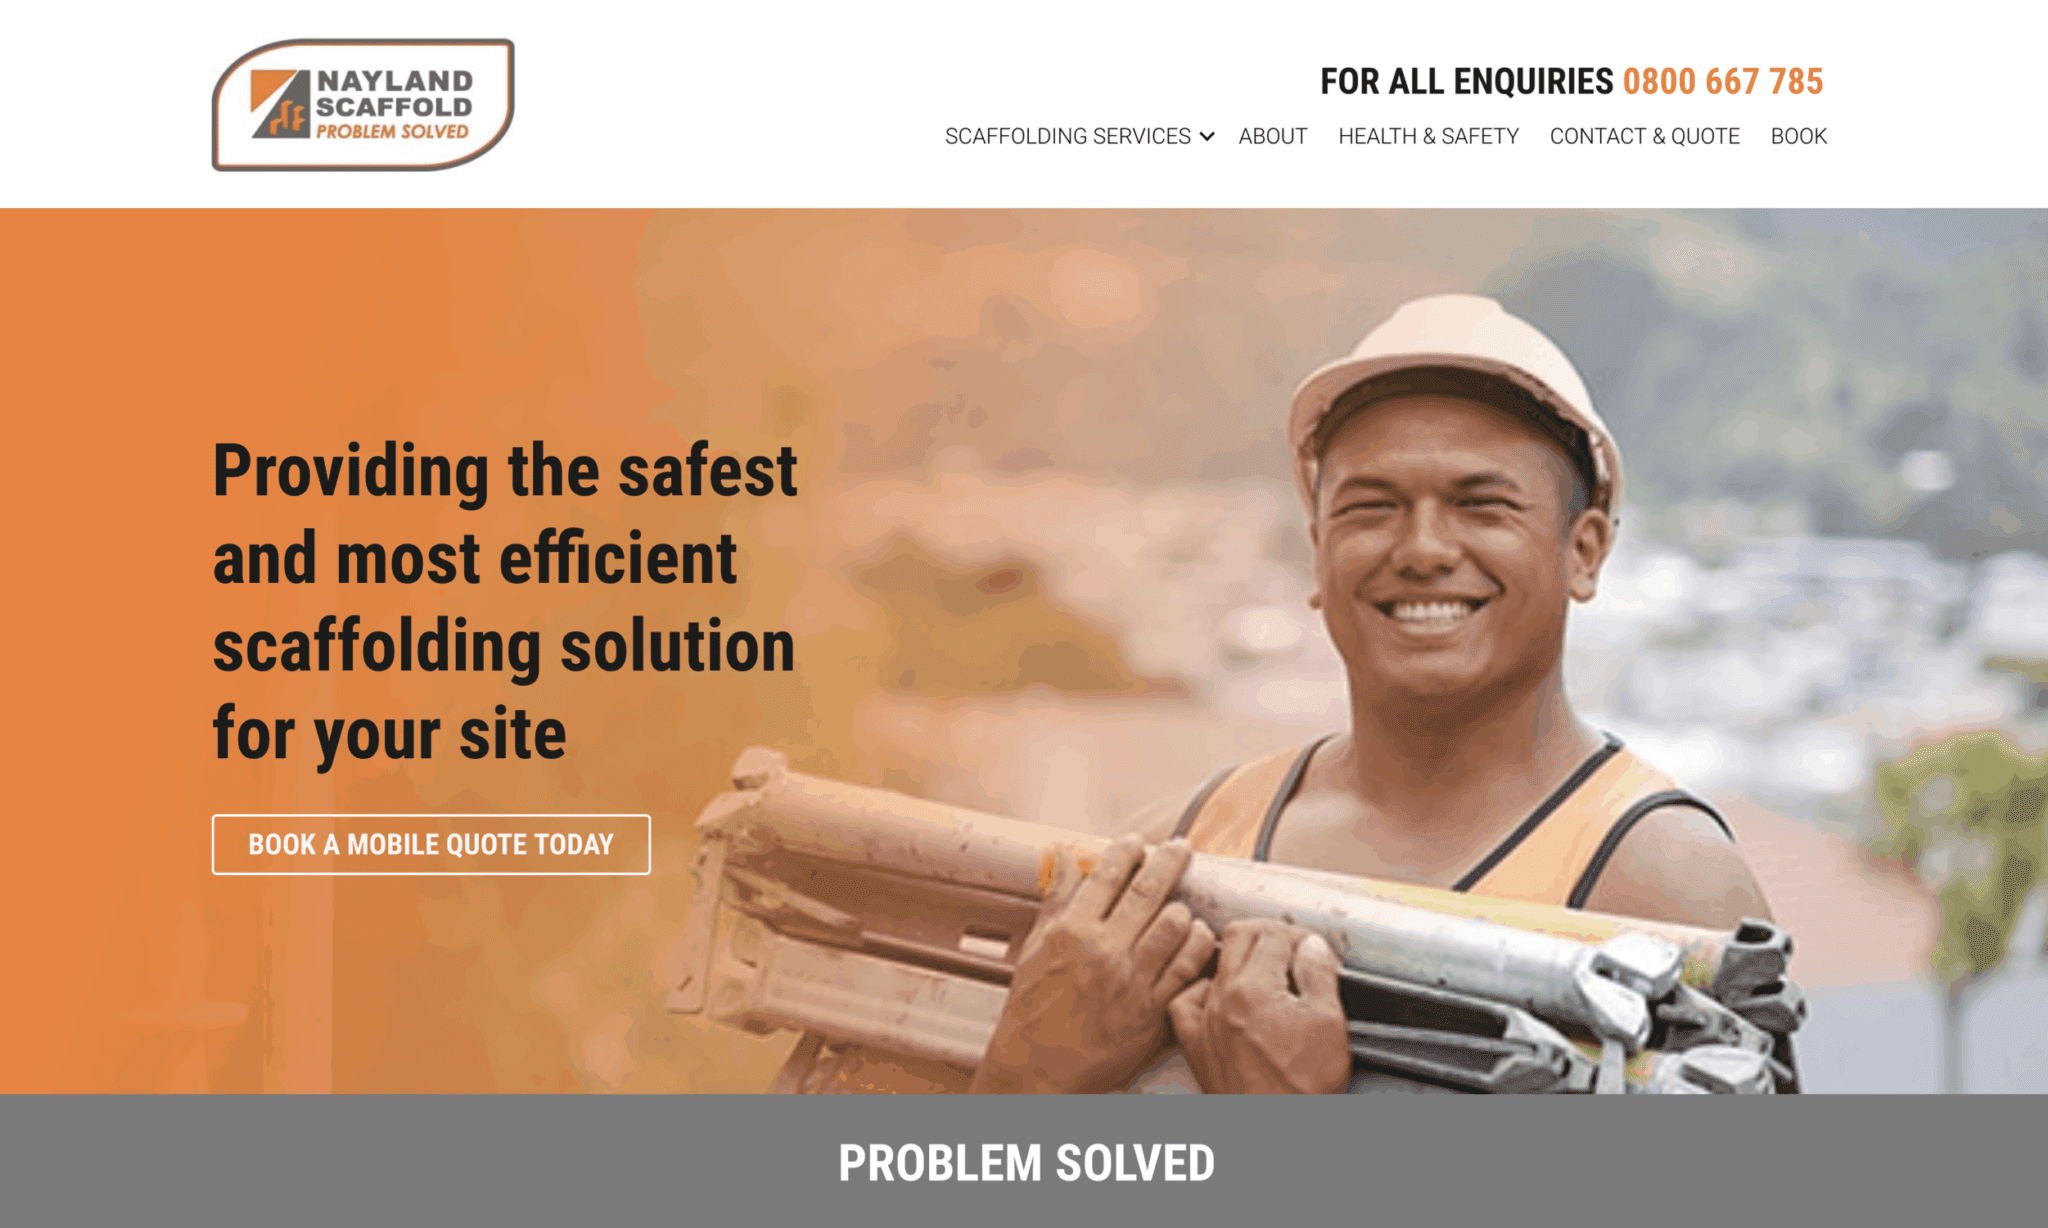 Nayland-scaffold-website-design